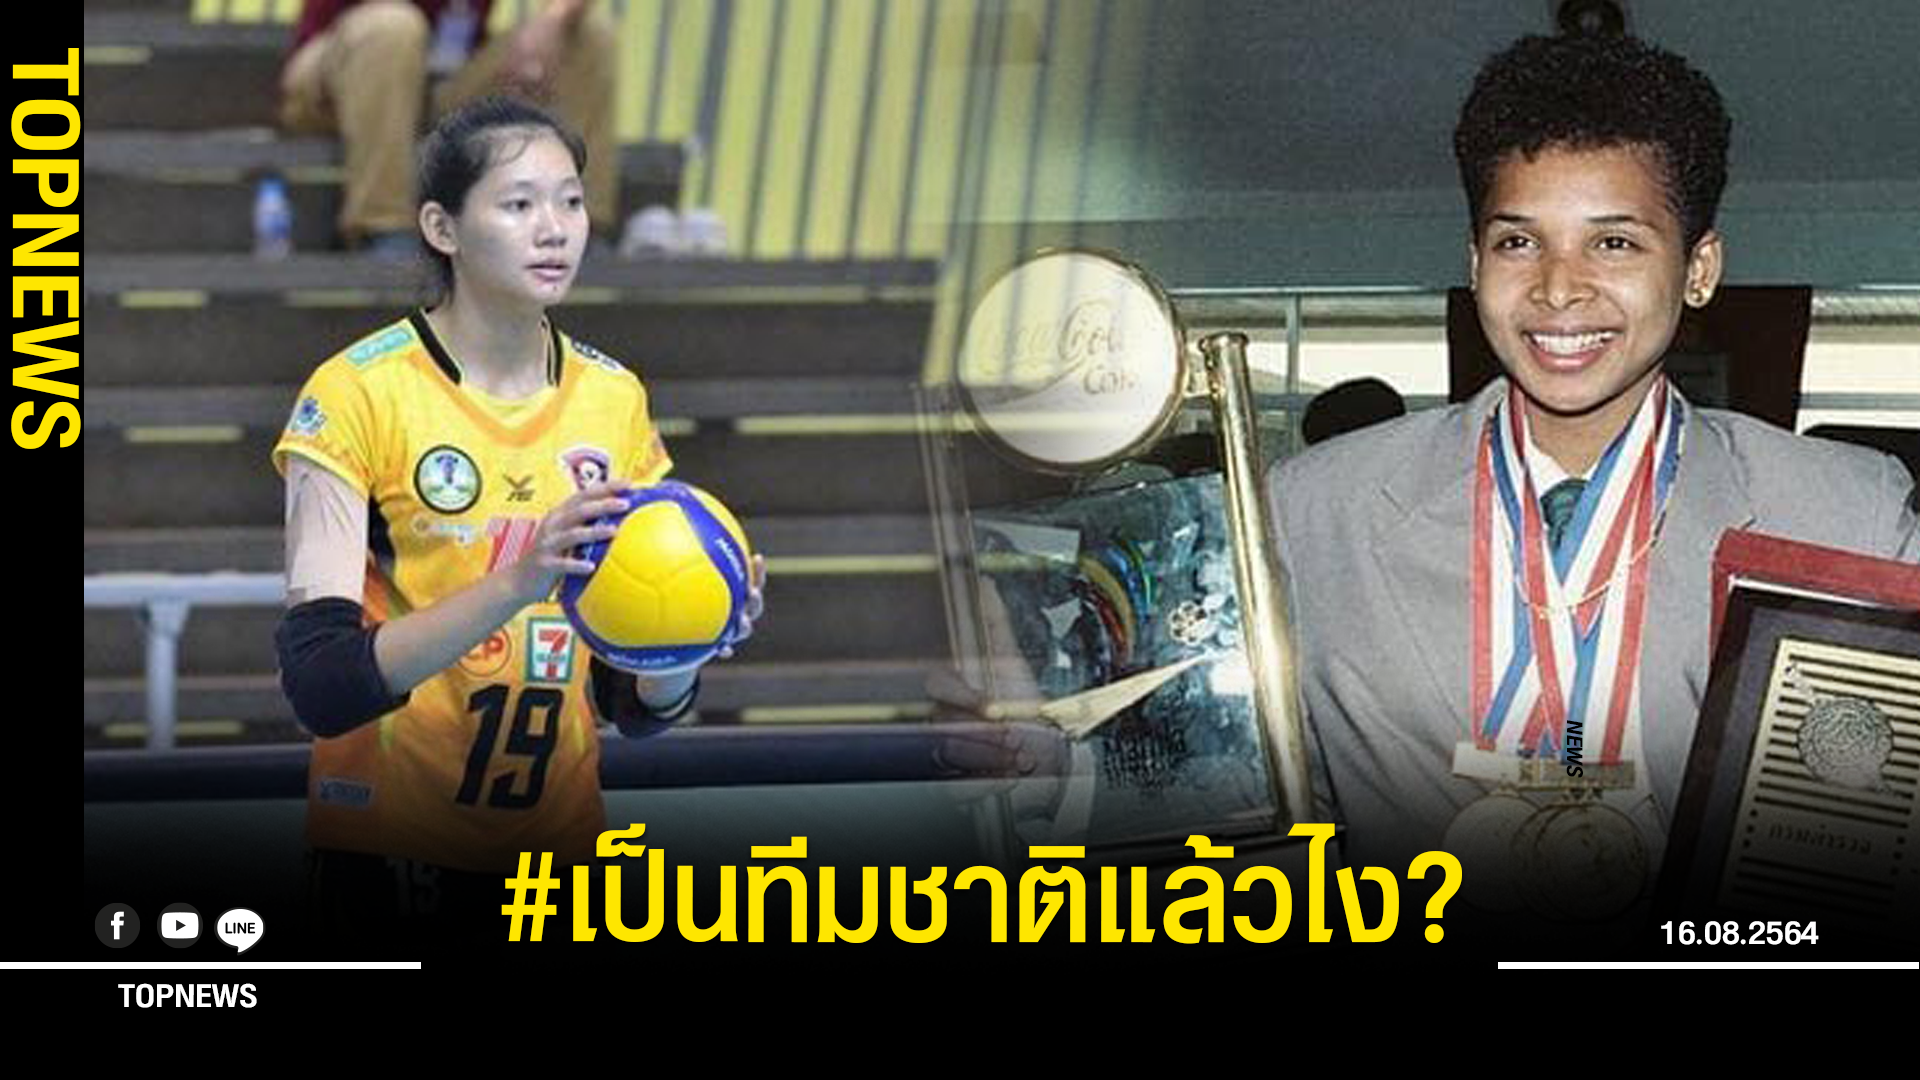 อดีตนักวิ่งทีมชาติไทย แซะ ชัชชุอร หลังด้อยค่าประเทศ ลั่น อย่าโง่แล้วอวดฉลาด เป็นนักกีฬาทีมชาติแล้วไง?